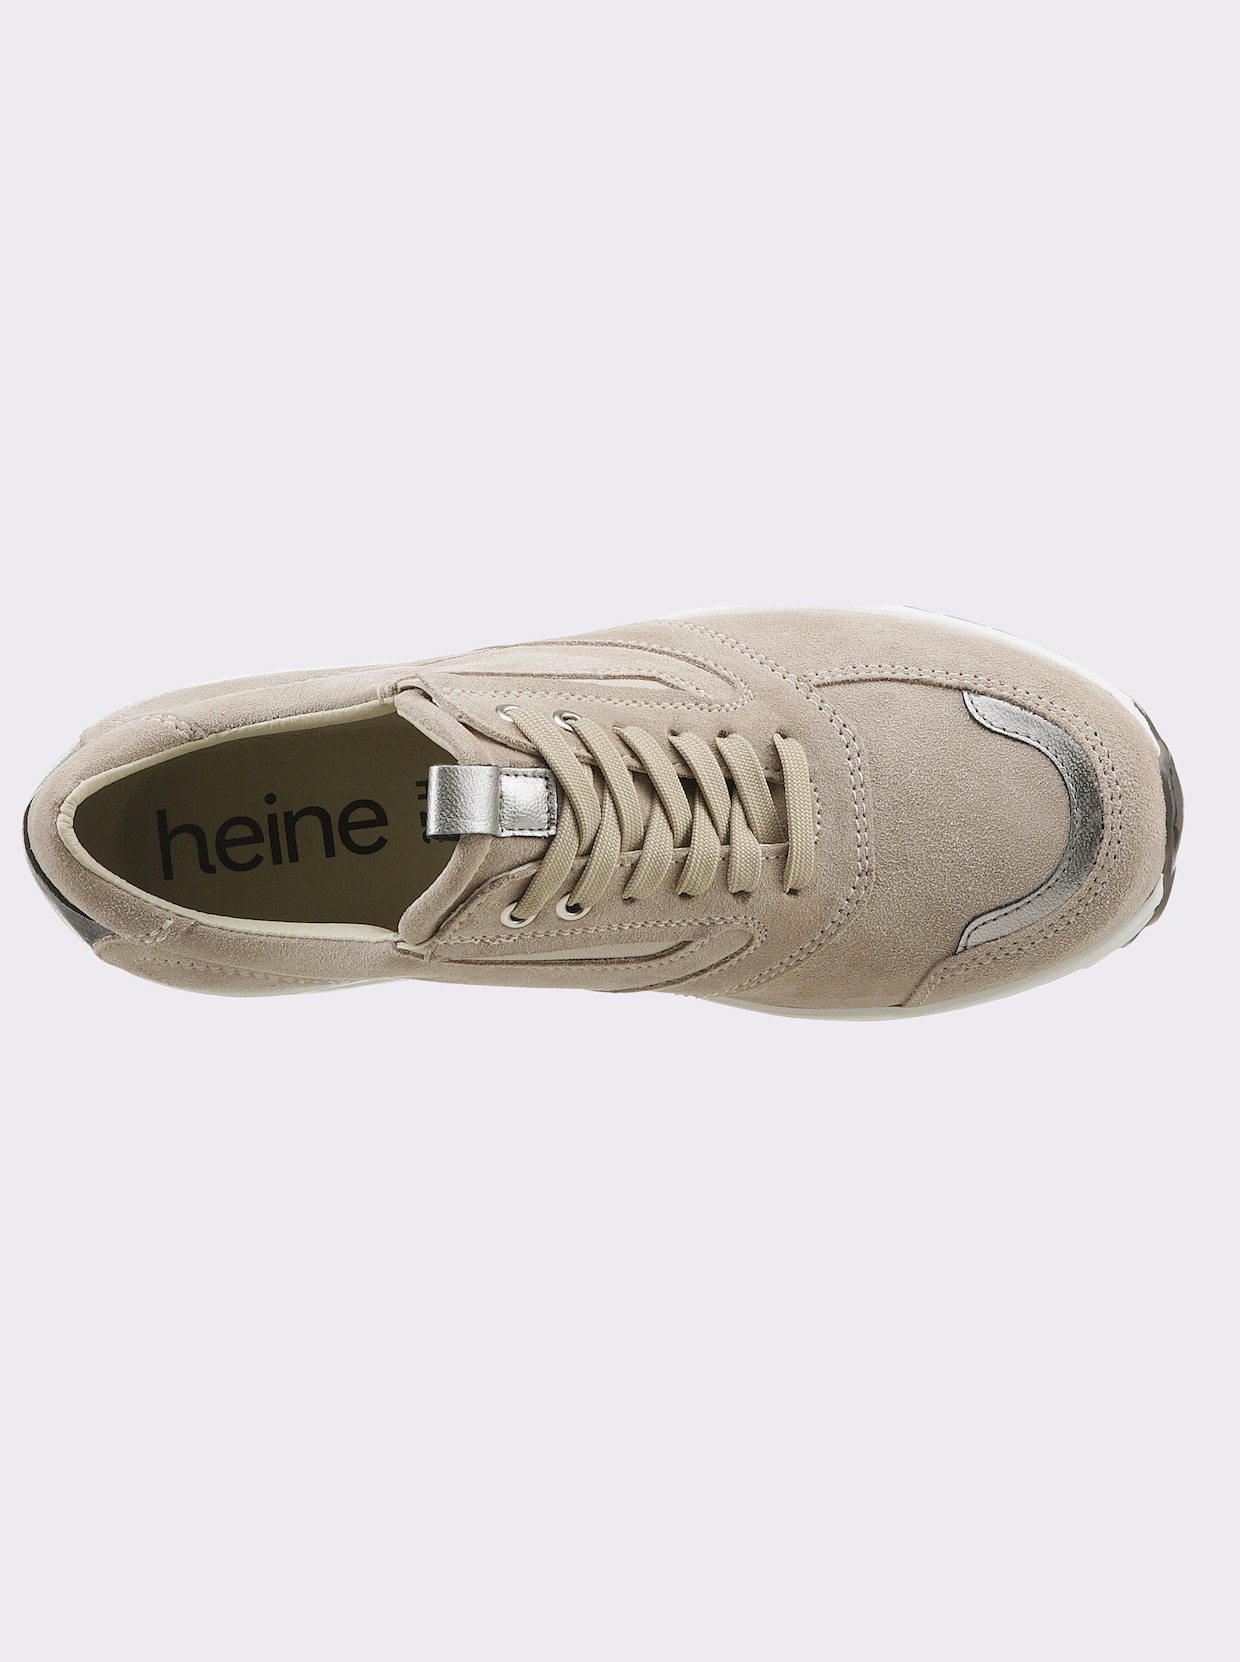 heine Sneaker - sand